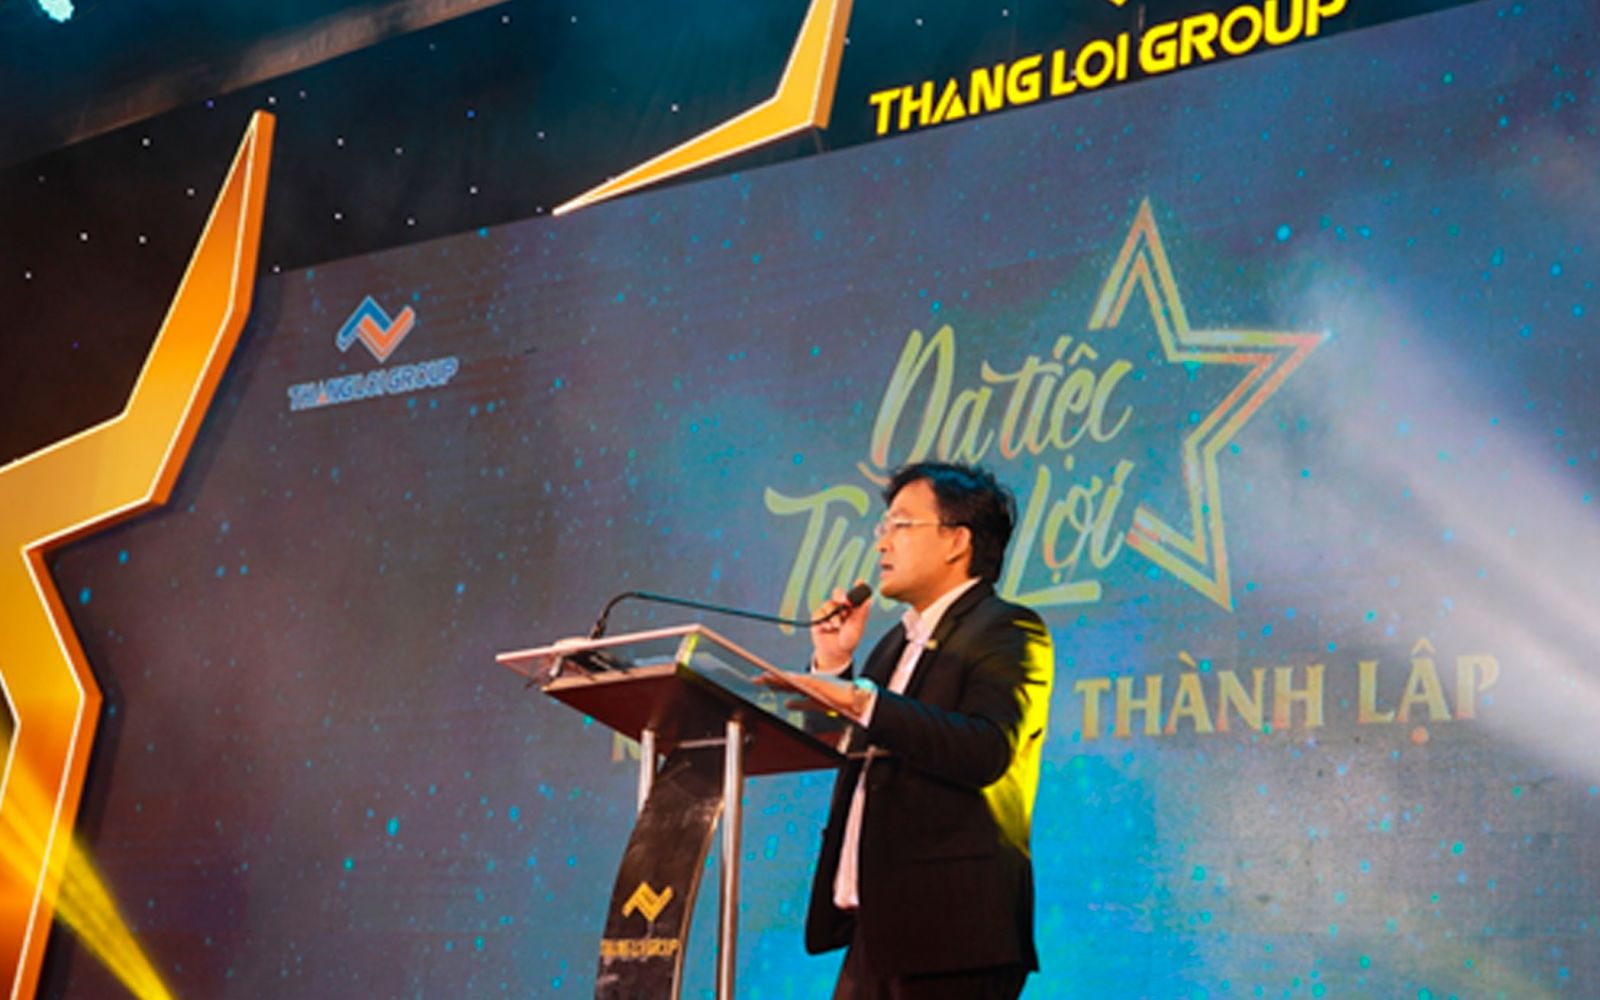 Ông Dương Long Thành - Chủ tịch HĐQT Thắng Lợi Group phát biểu tại sự kiện “Dạ tiệc Thắng Lợi - Kỷ niệm 9 năm thành lập”